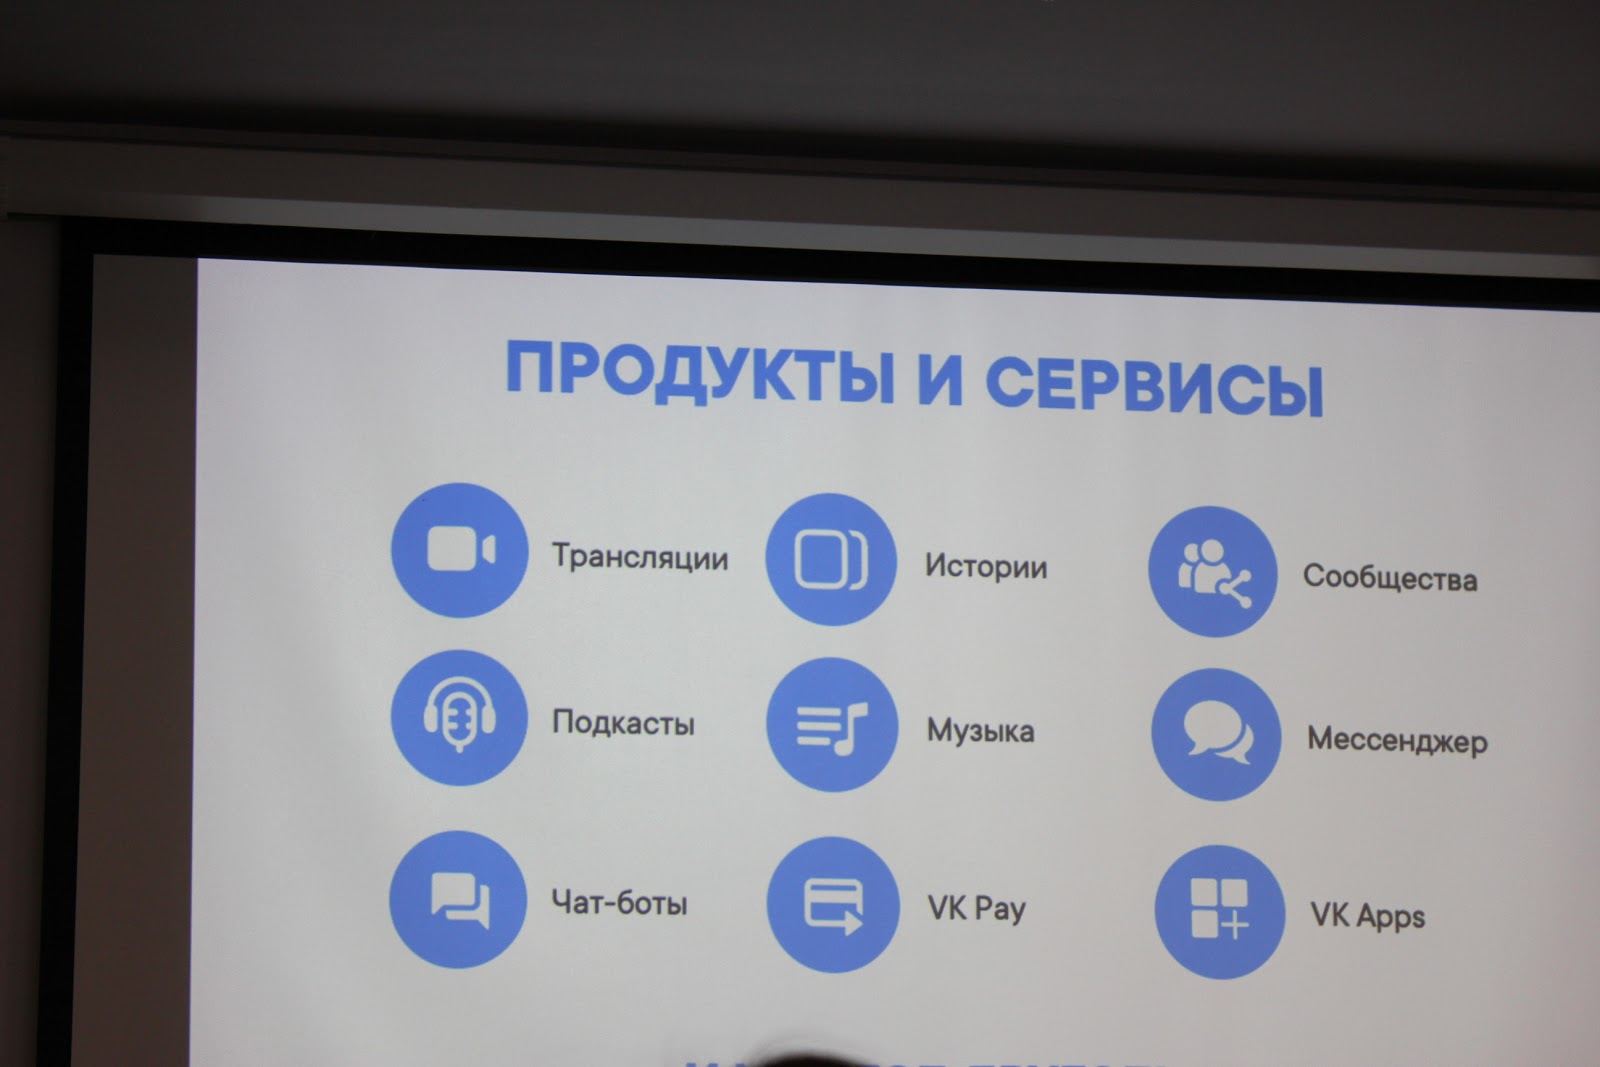 #ВНижнем — ВКонтакте открыл представительство в Нижнем Новгороде - 4